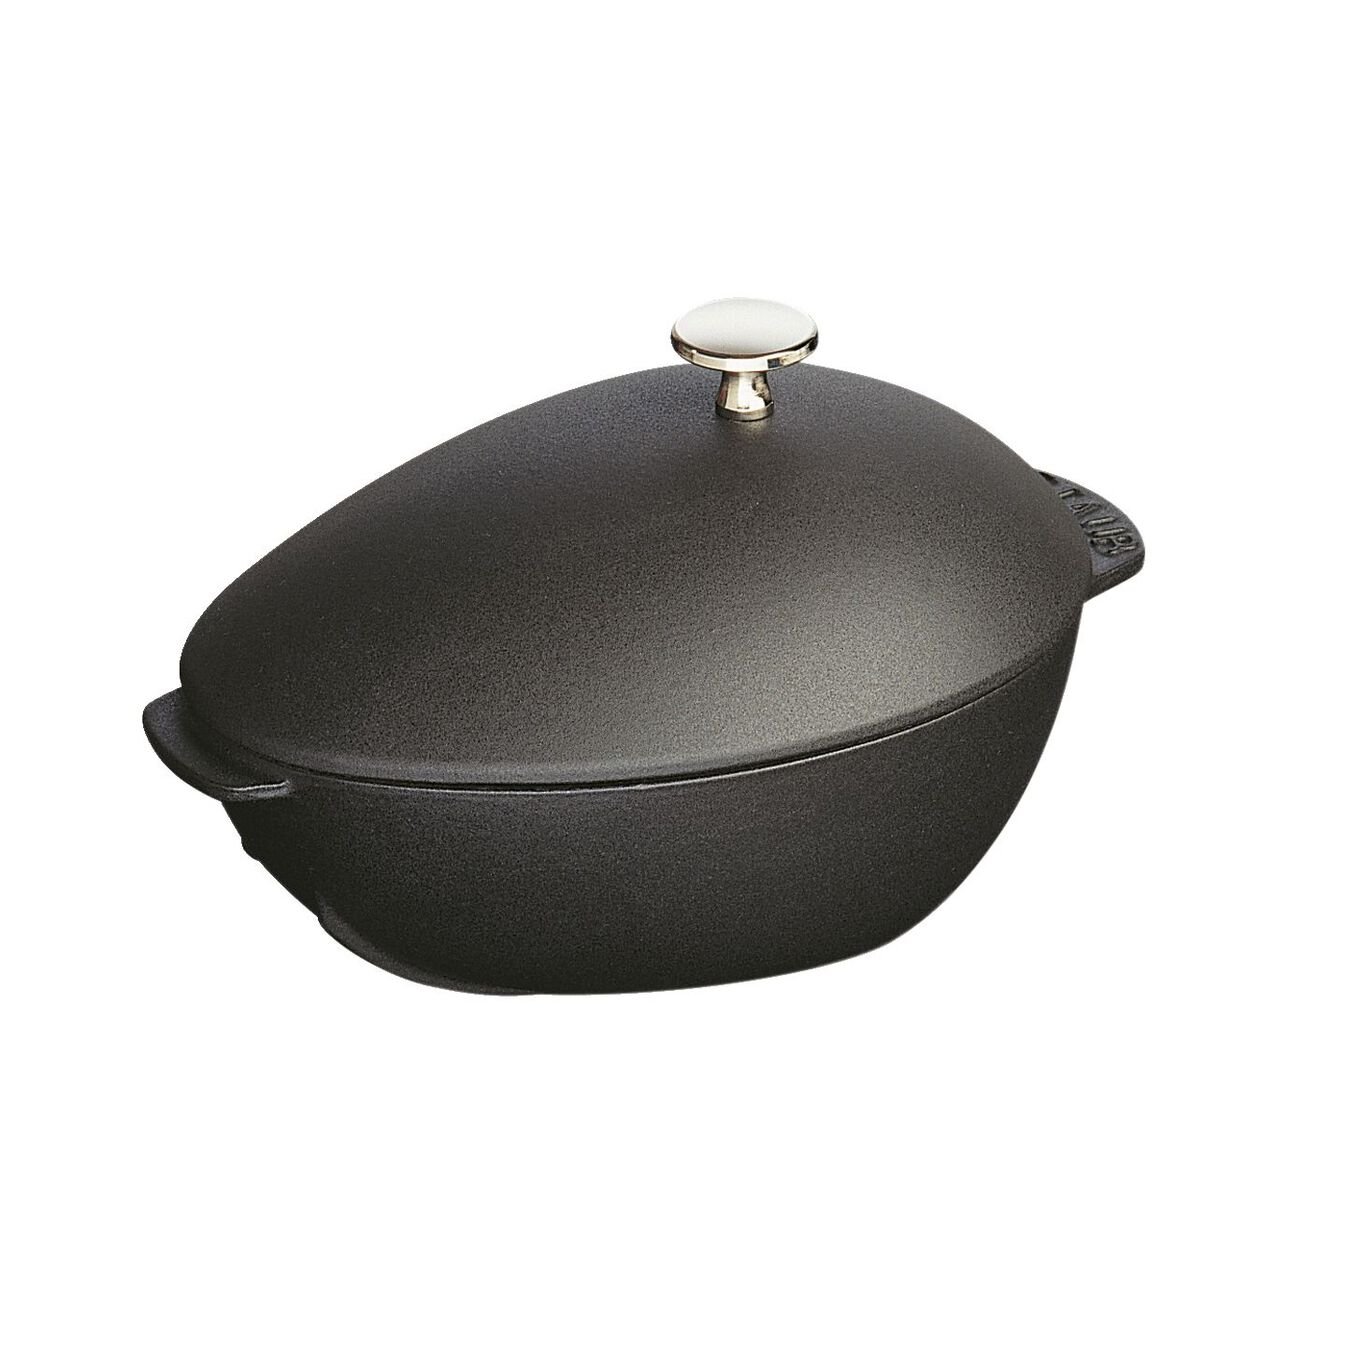 2 l cast iron oval Mussel pot, black,,large 4